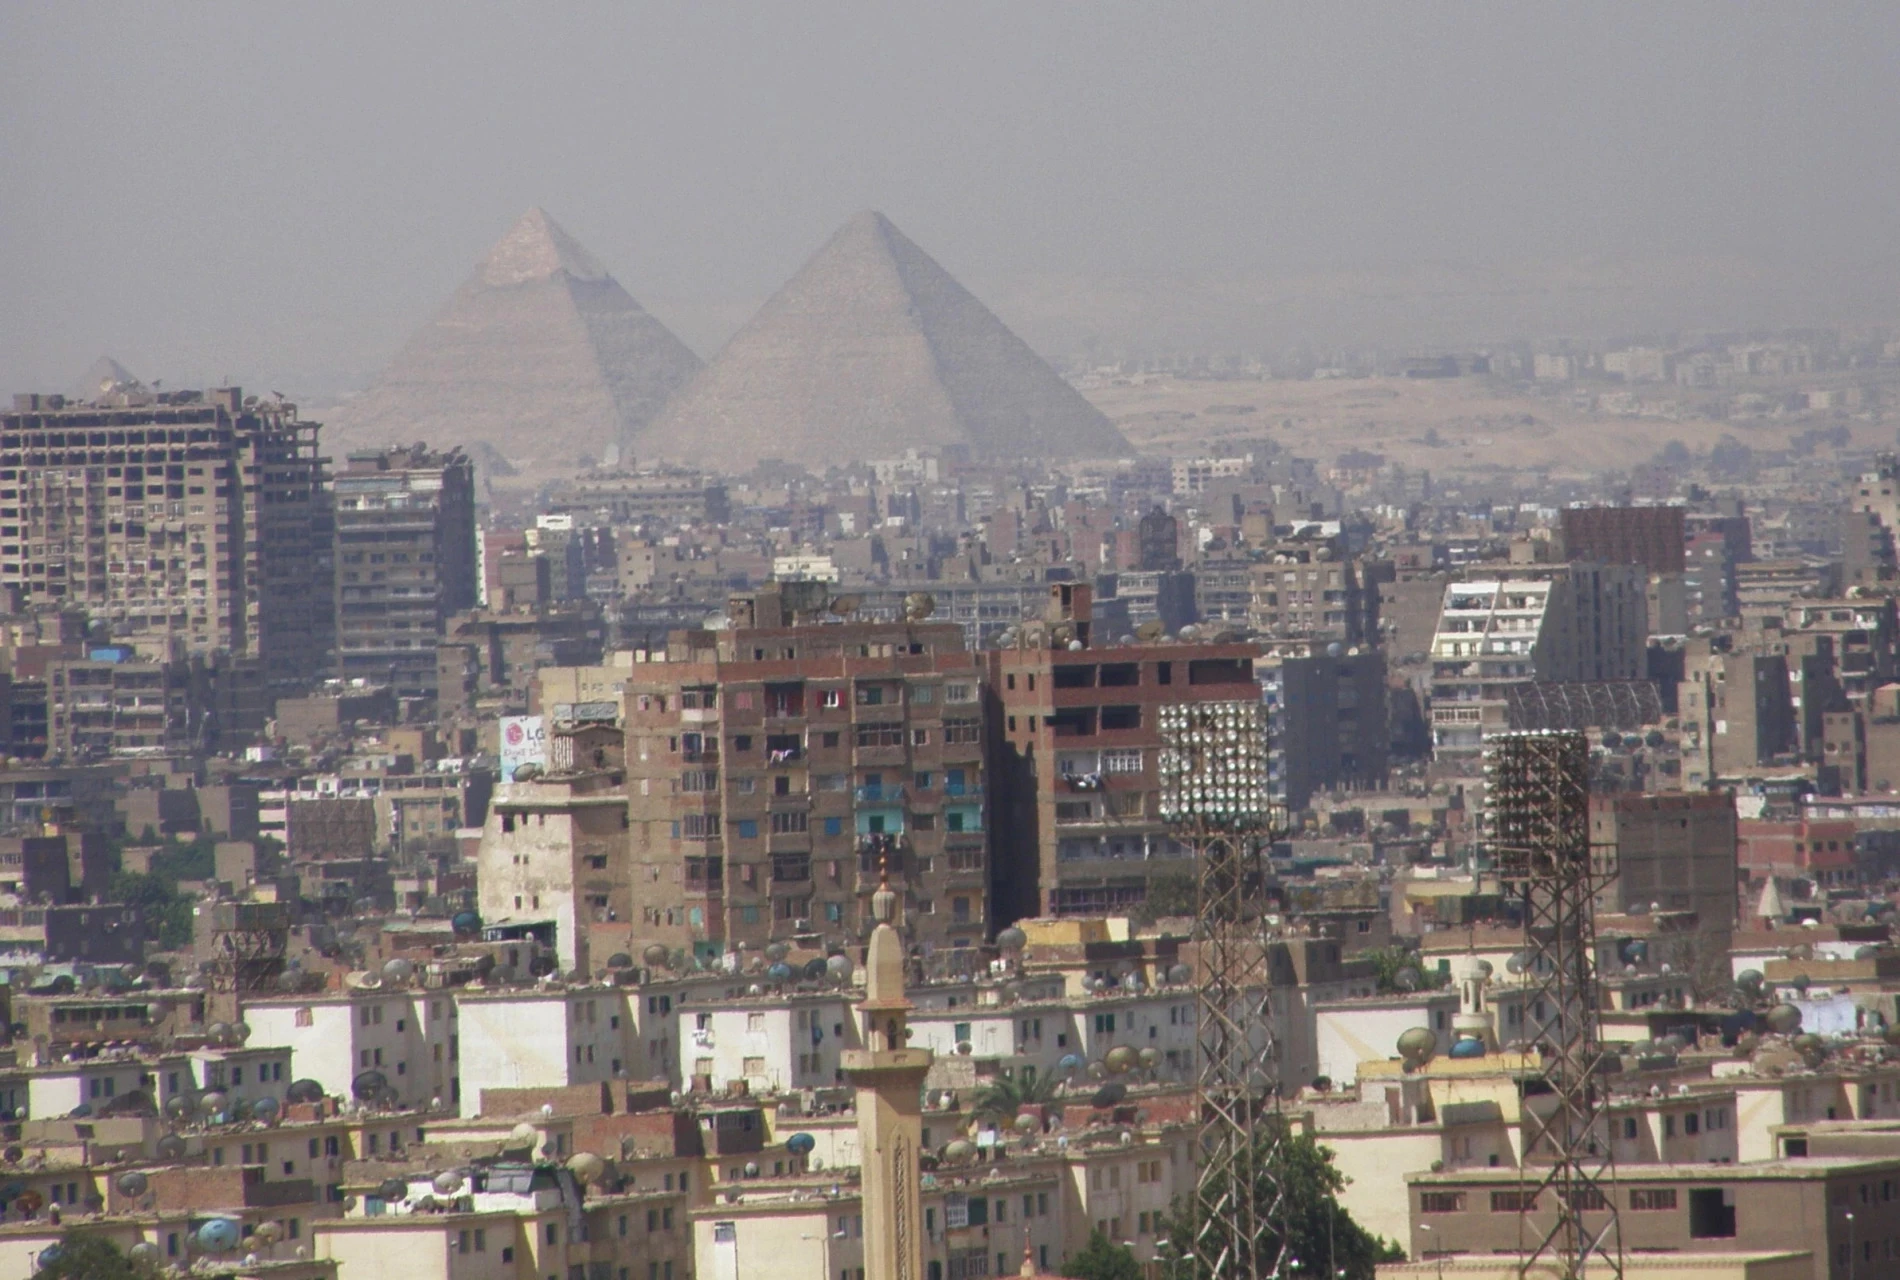 De beroemde piramides van Gizeh liggen dicht bij de stad Caïro